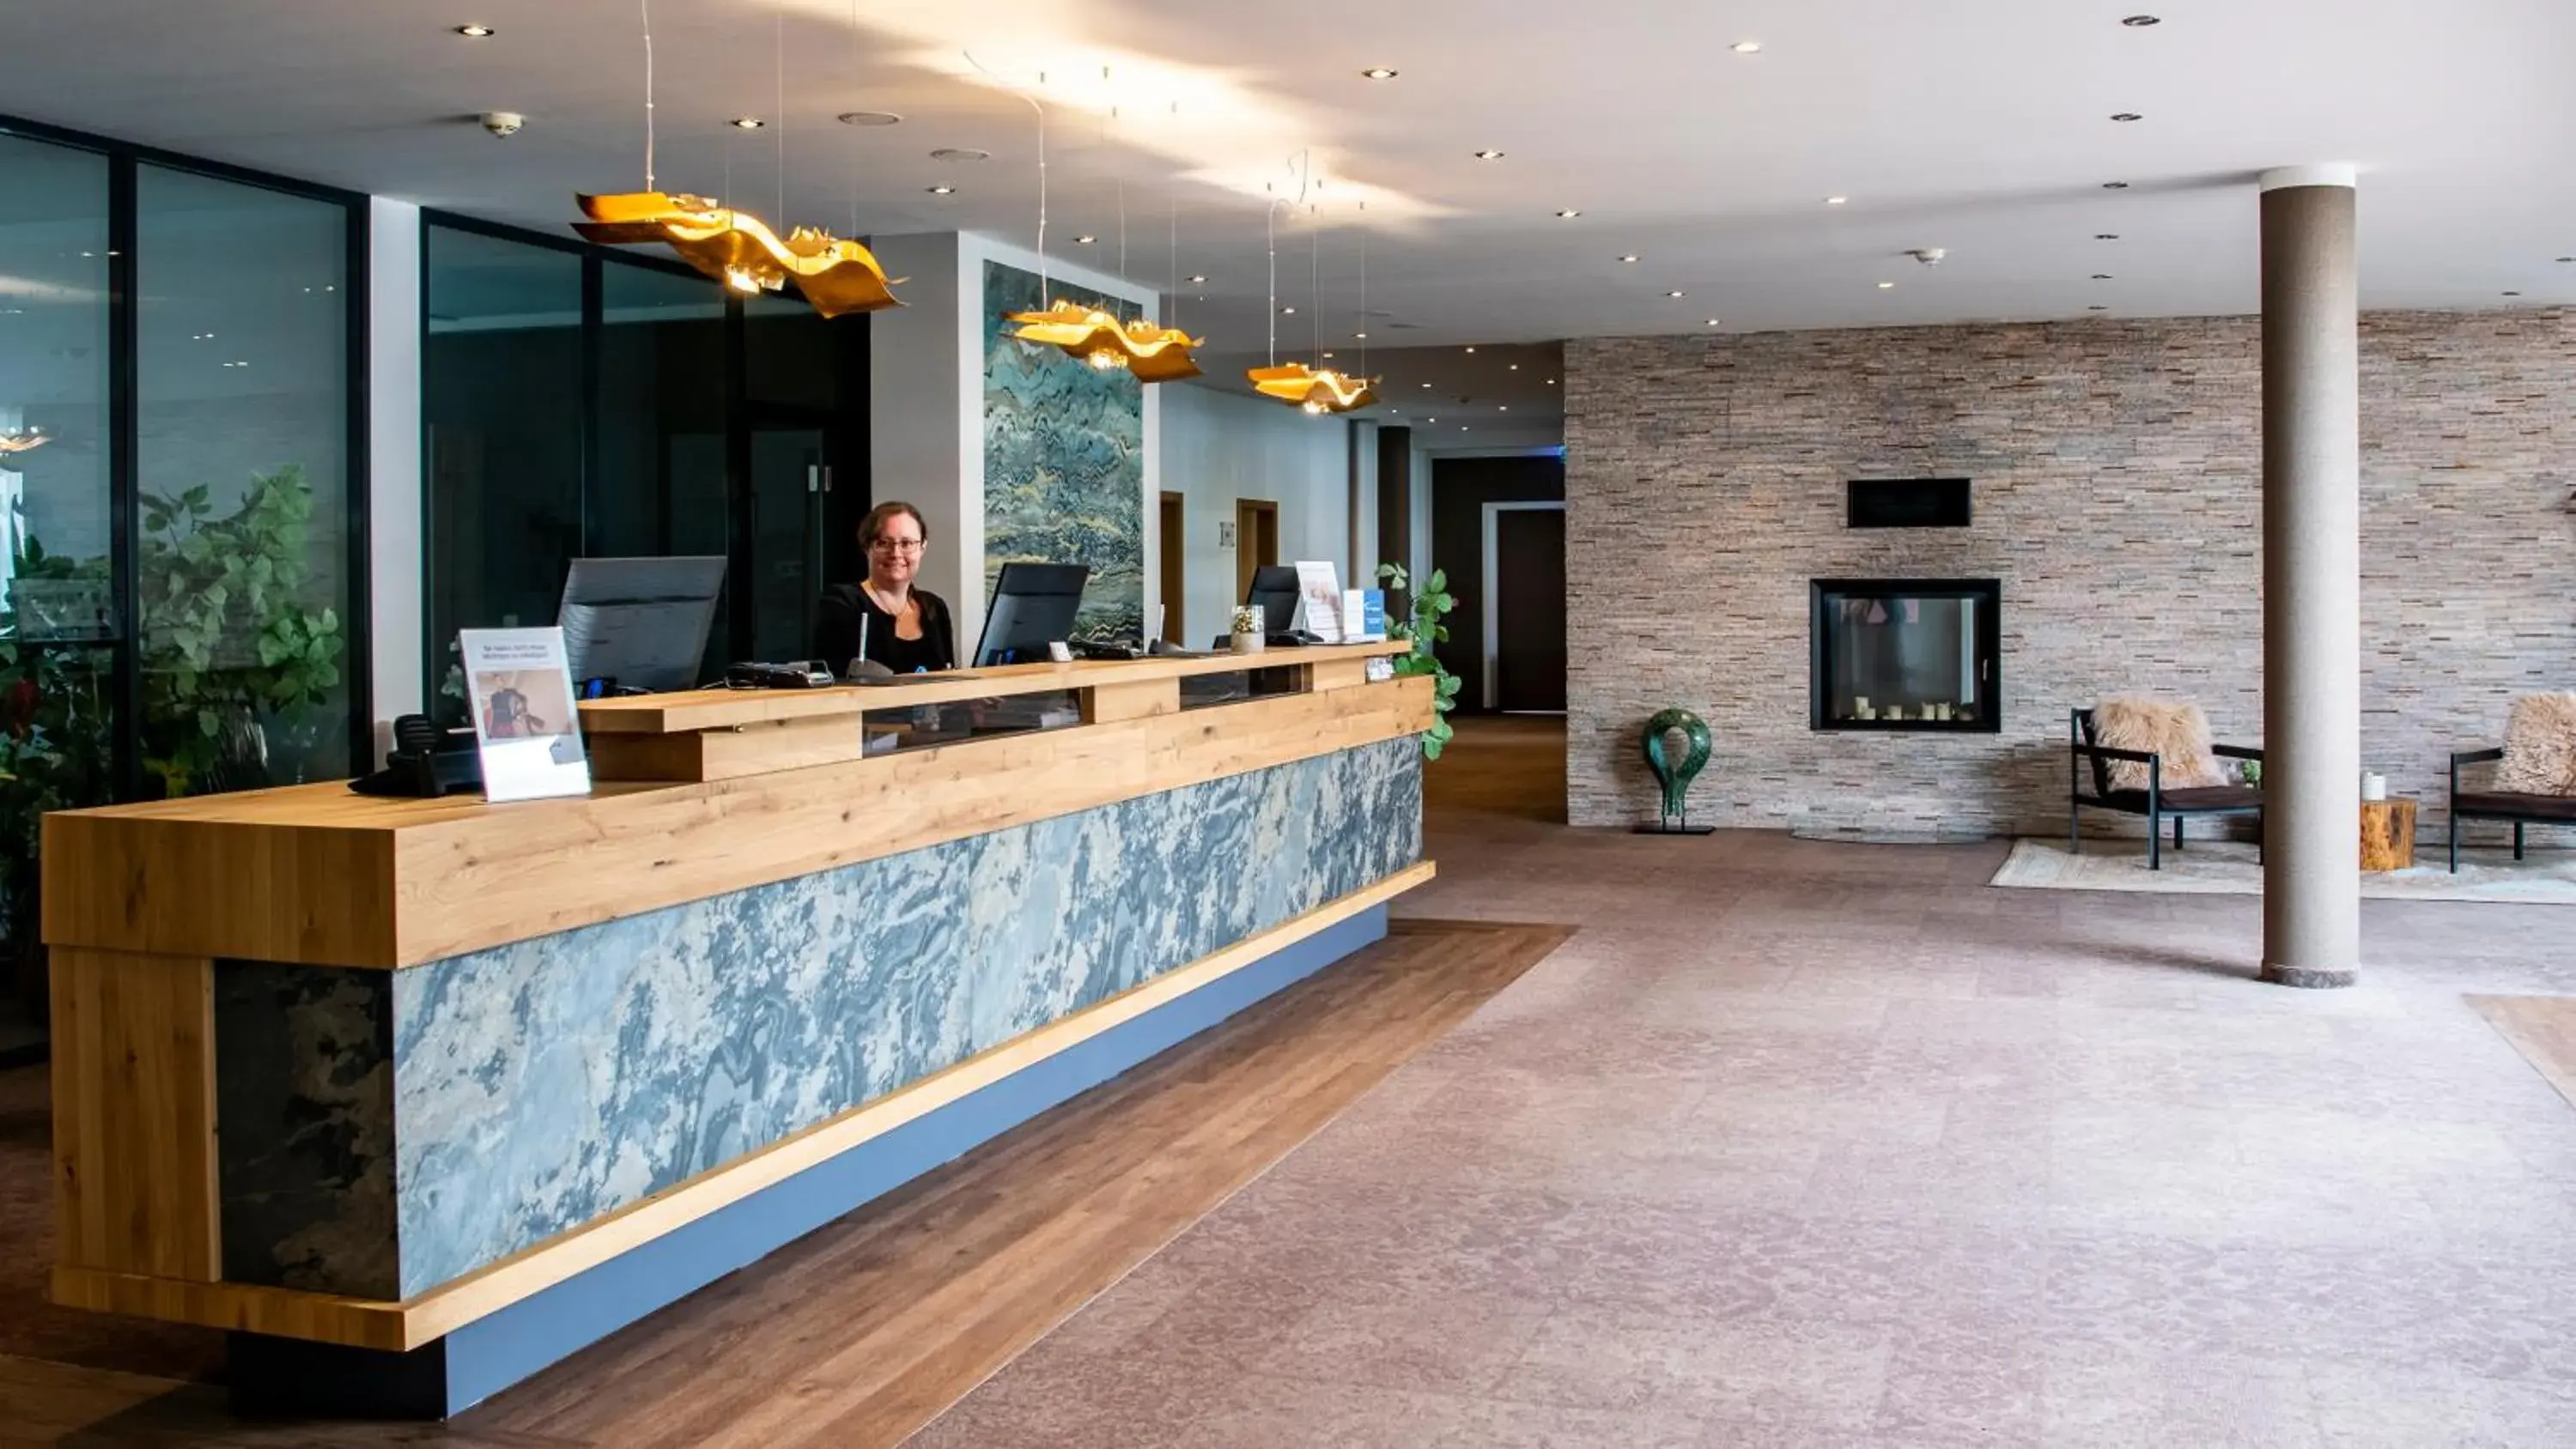 Lobby or reception, Lobby/Reception in Best Western Plus iO Hotel